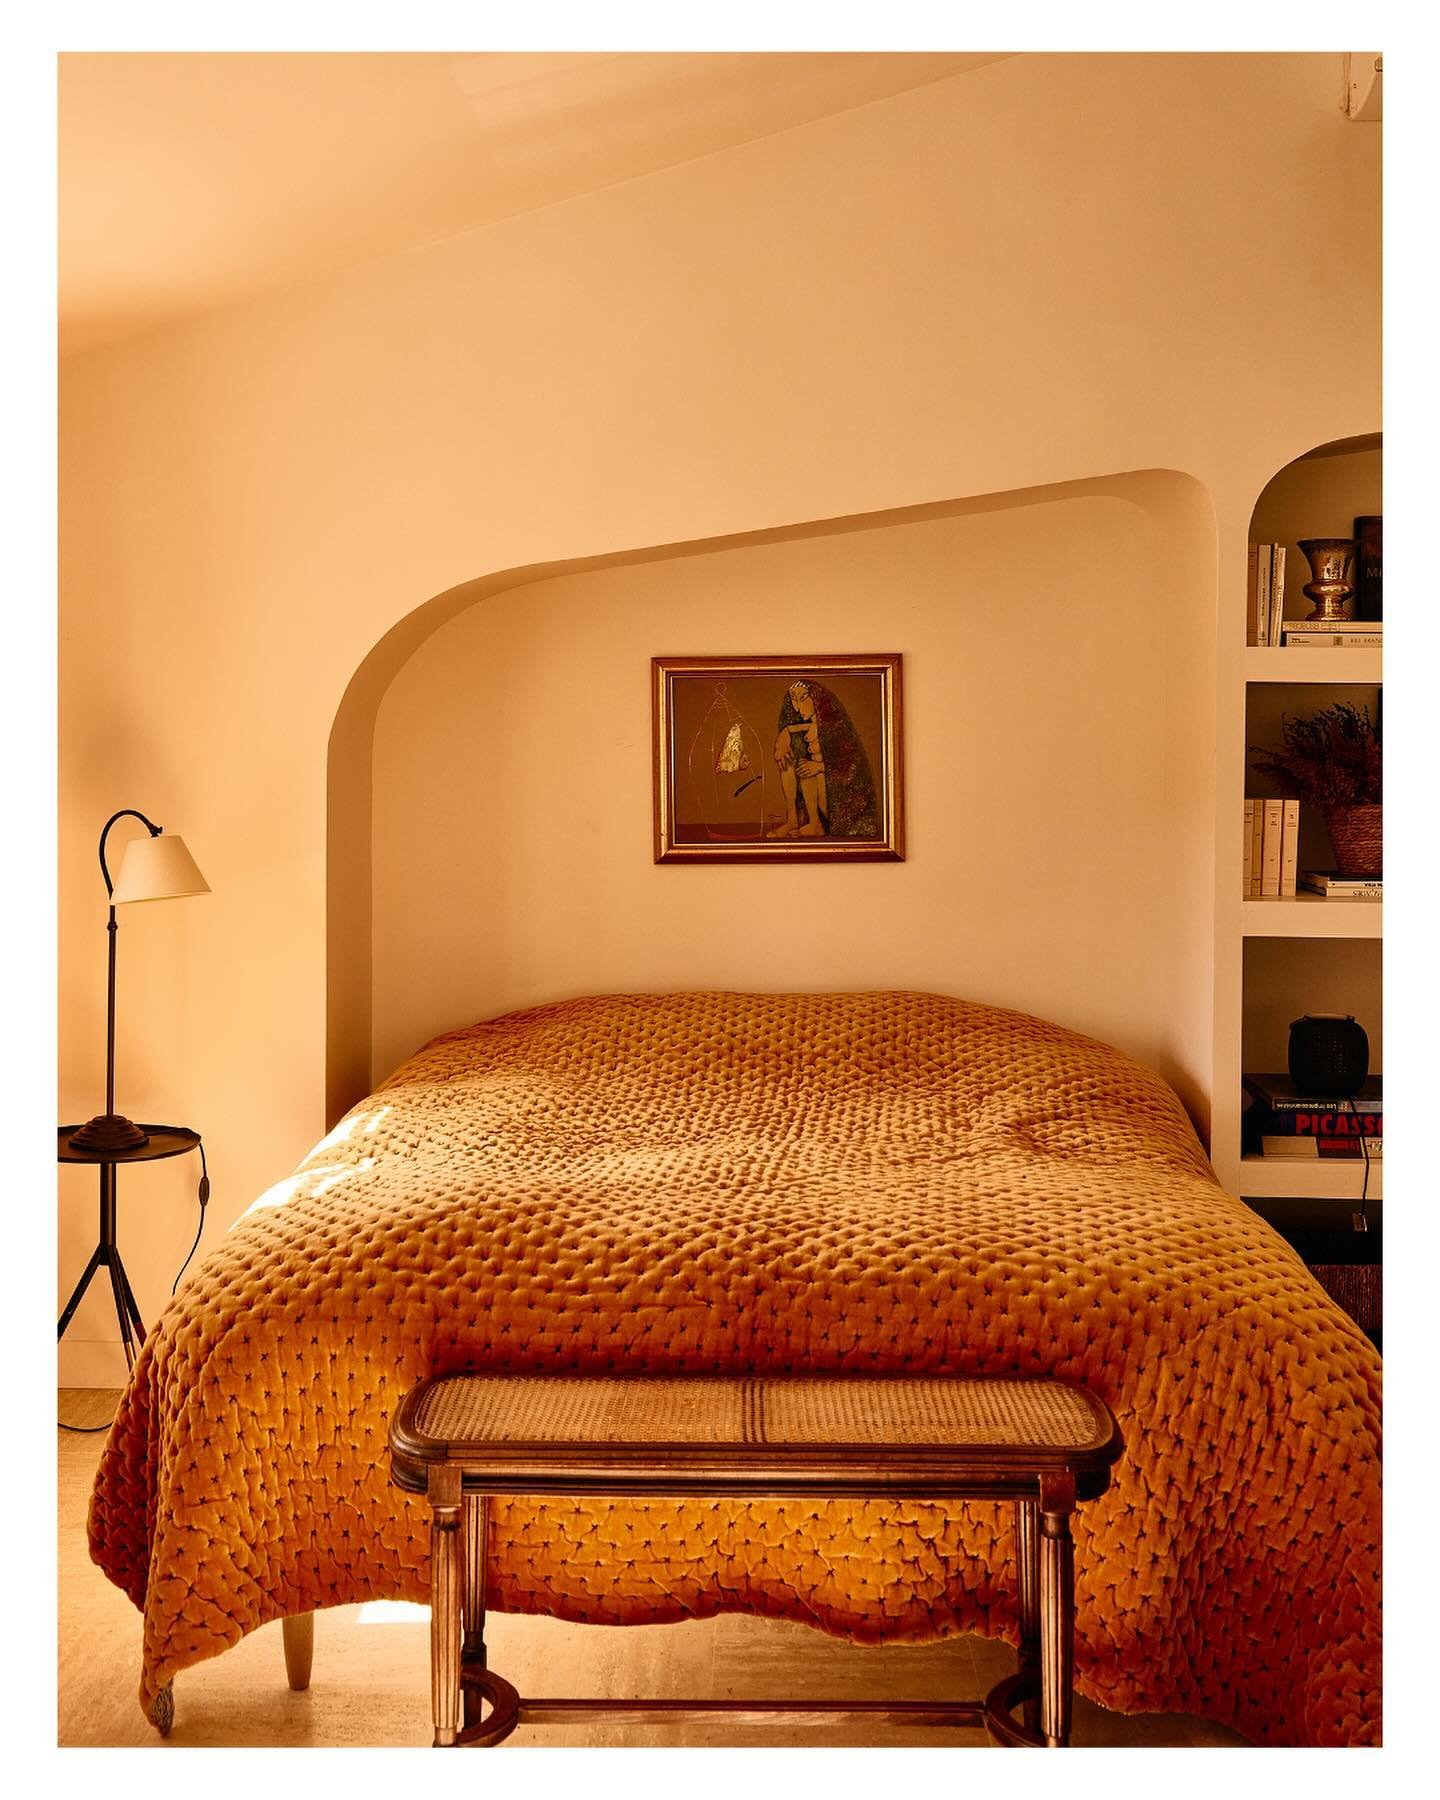 Villa in M&eacute;nerbes 🇫🇷
&bull;
&bull;
&bull;
&bull; 
#france #provence #interiordesign #airbnb #interior #menerbes